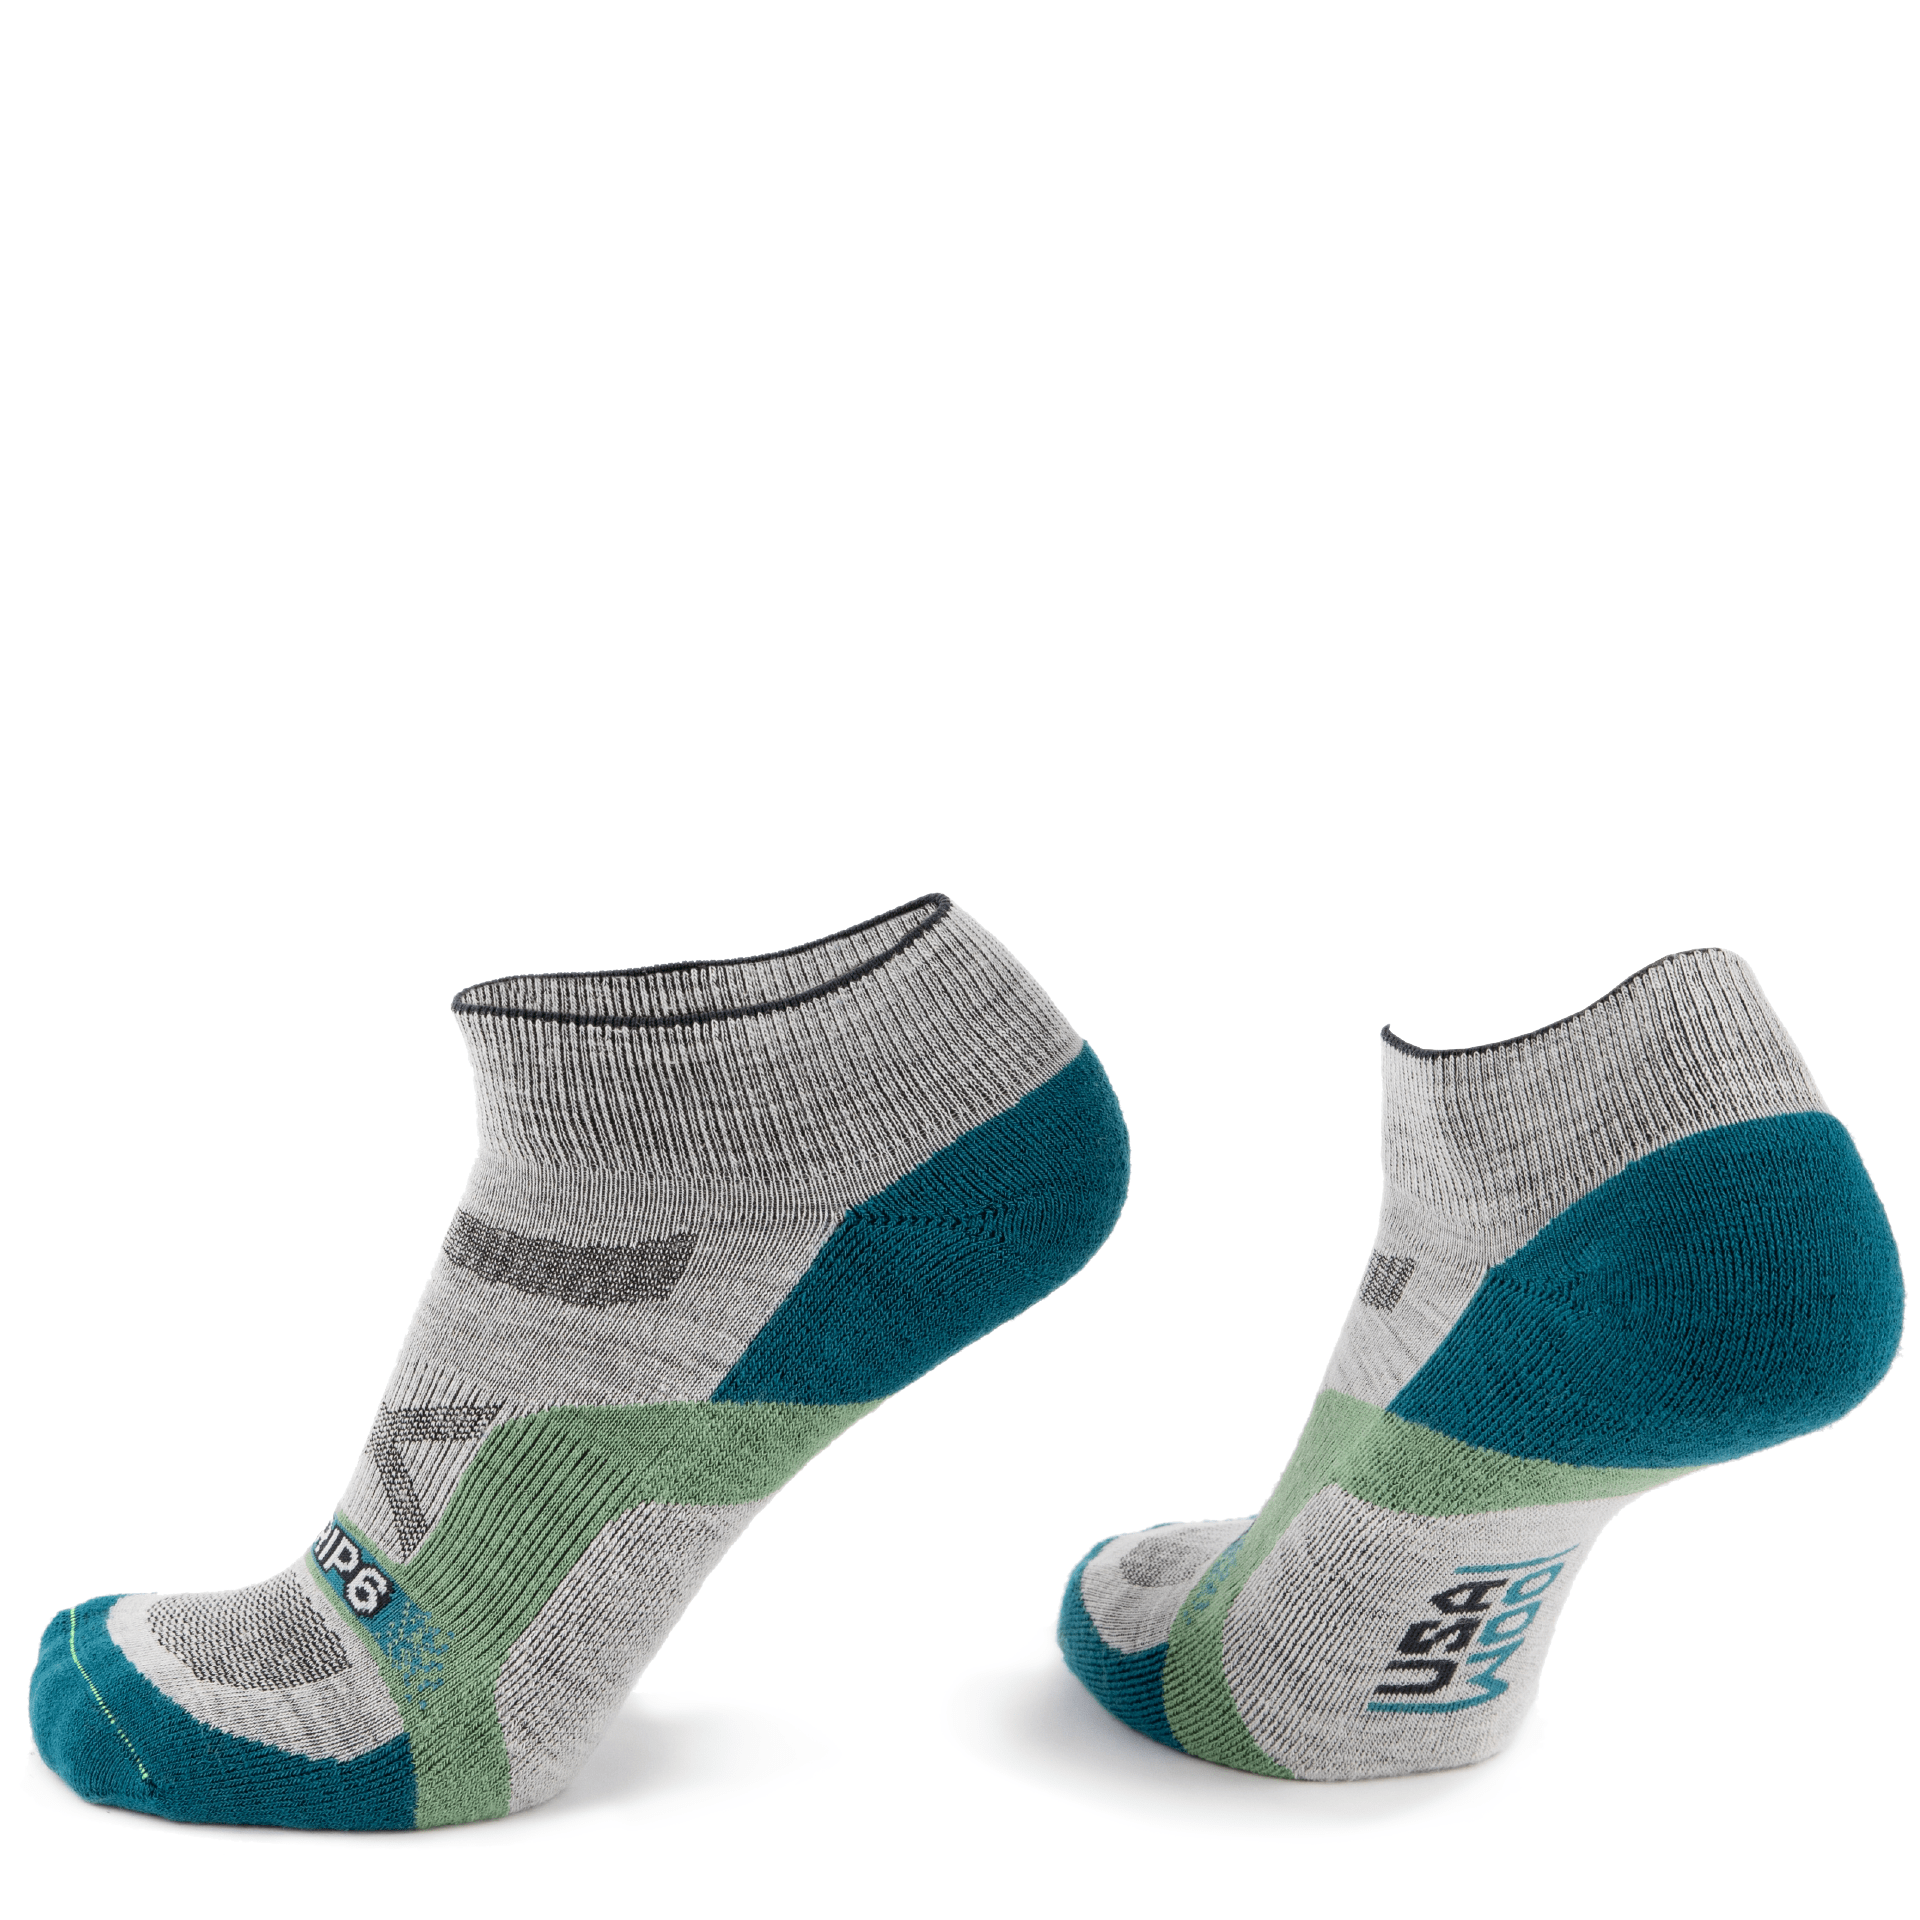 Wool Ankle Socks - Approach Blue